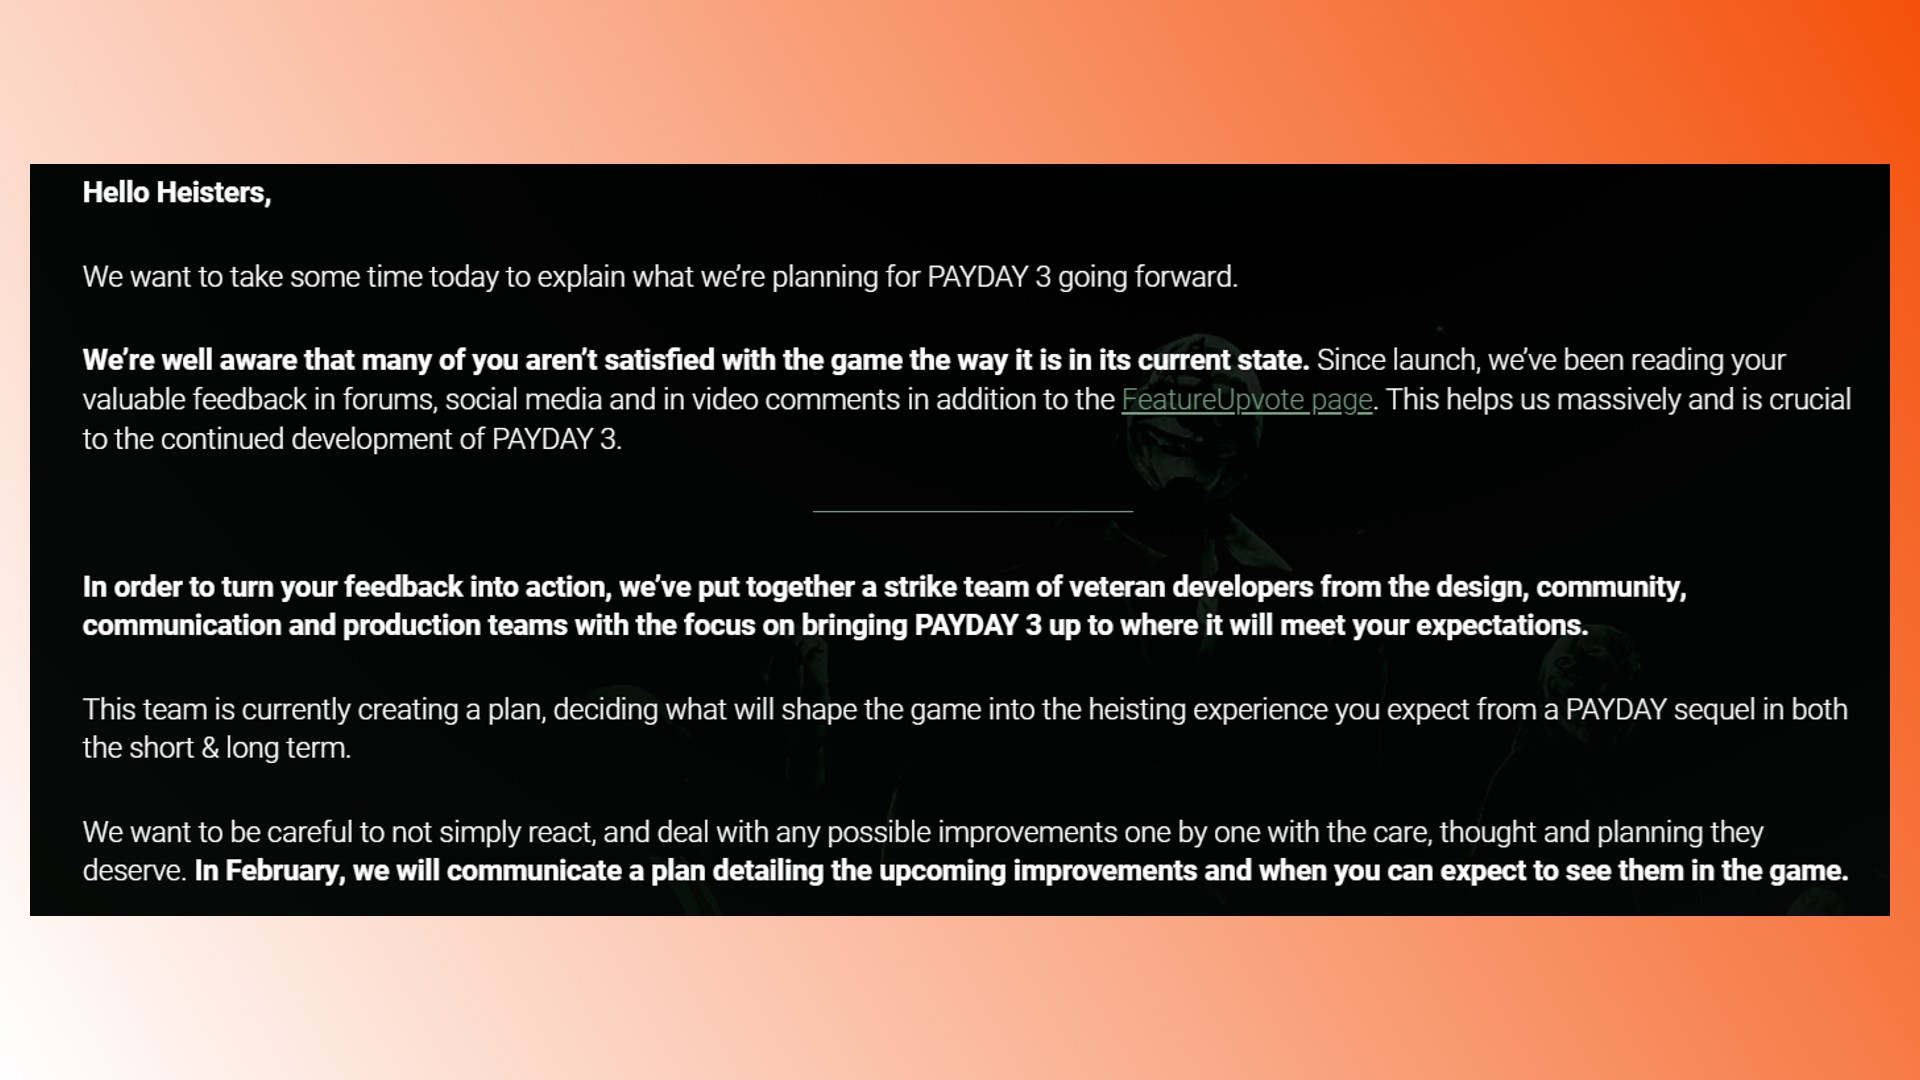 Payday 3-Korrekturen: Eine Aussage des Payday 3-Entwicklers Starbreeze über die Zukunft des FPS-Spiels